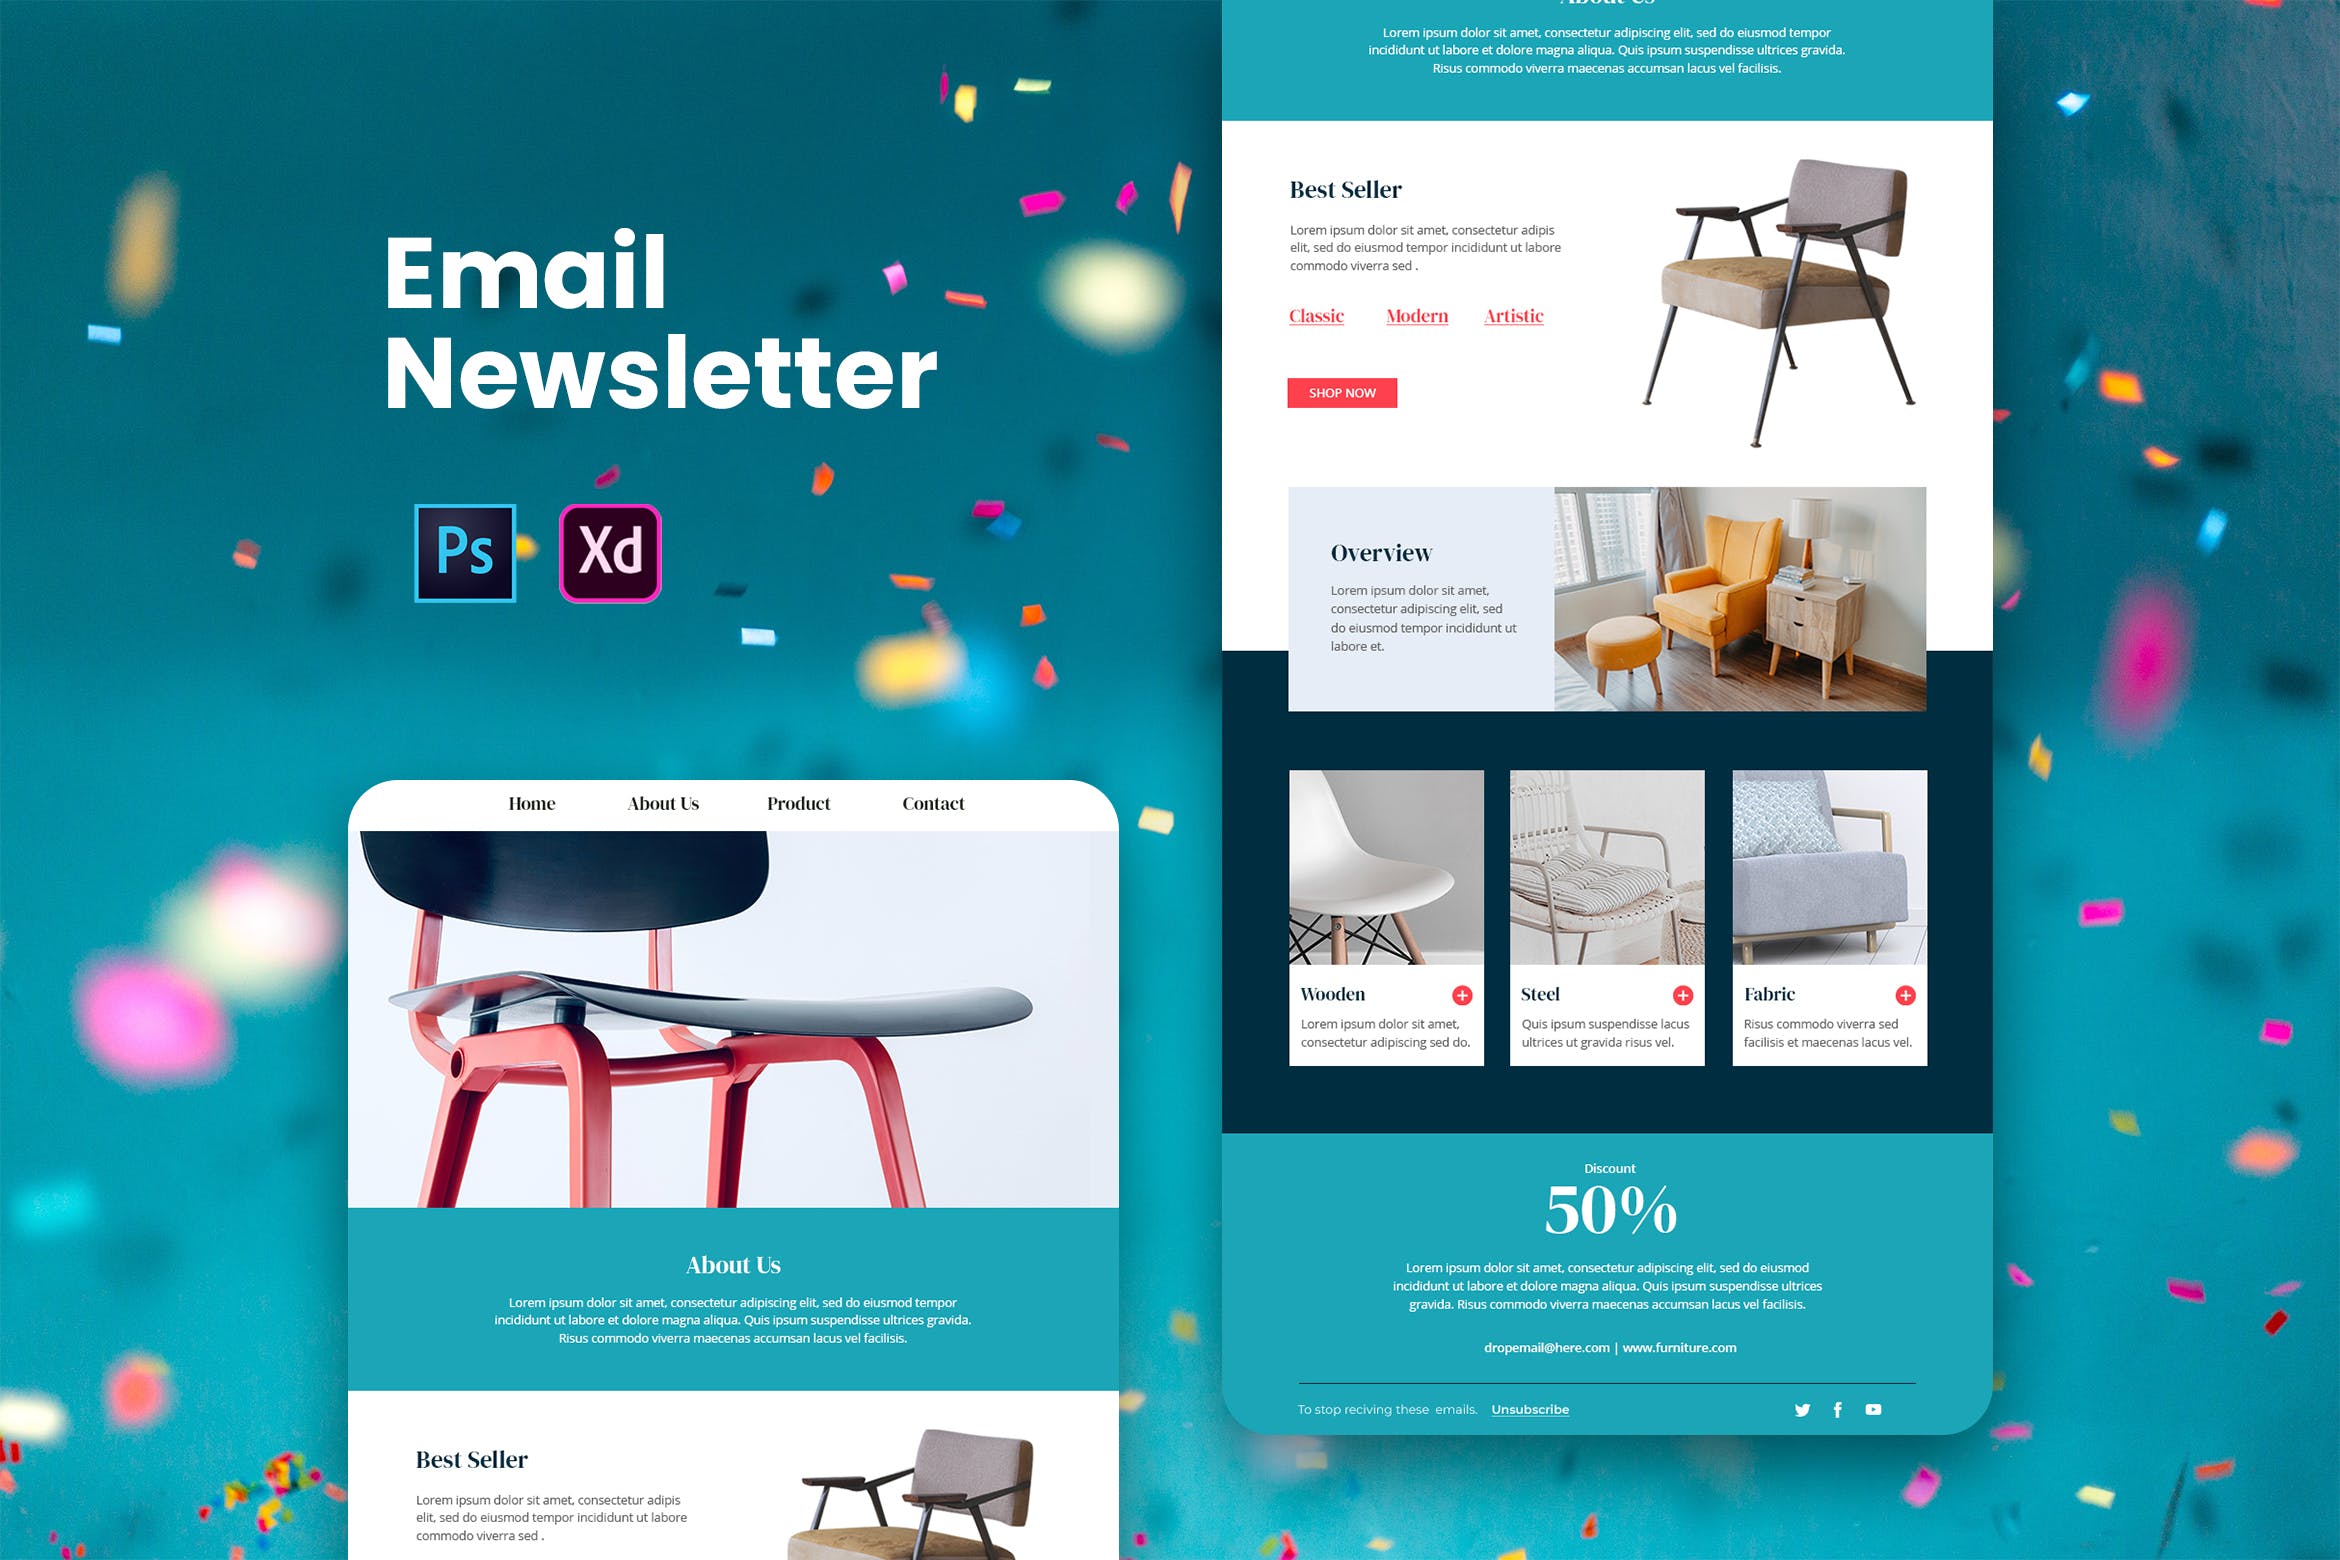 家具品牌推广EDM邮件模板蚂蚁素材精选 Furniture Email Newsletter插图